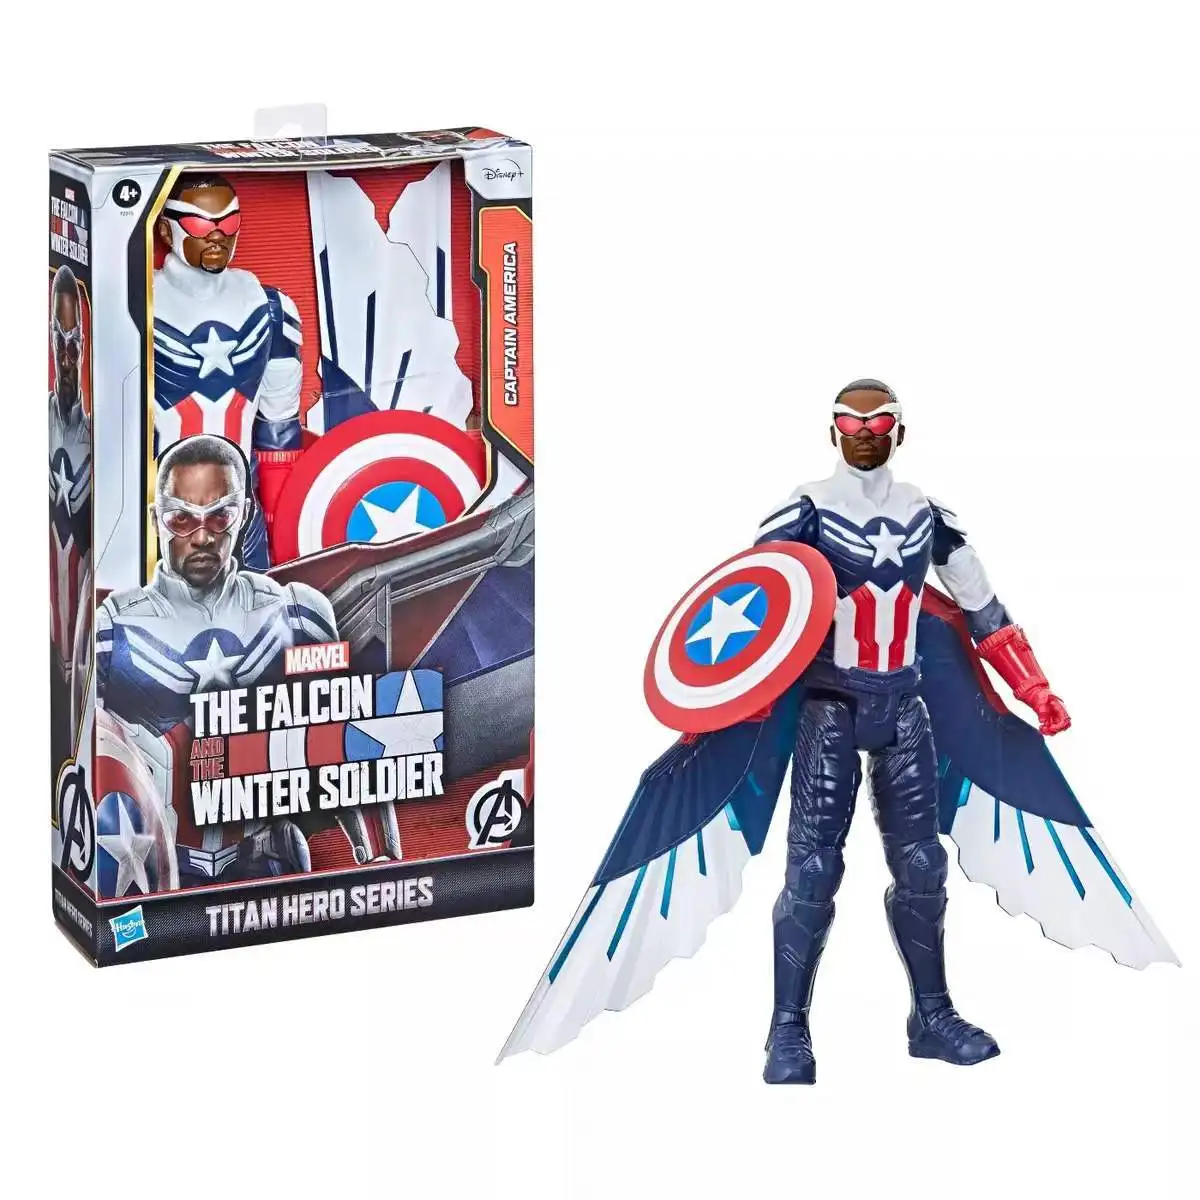 

The Avengers Captain America Falcon Sam Wilson Hand Office Doll Children's Toy Gift US Version Marvel Avengers Titan Hero Series